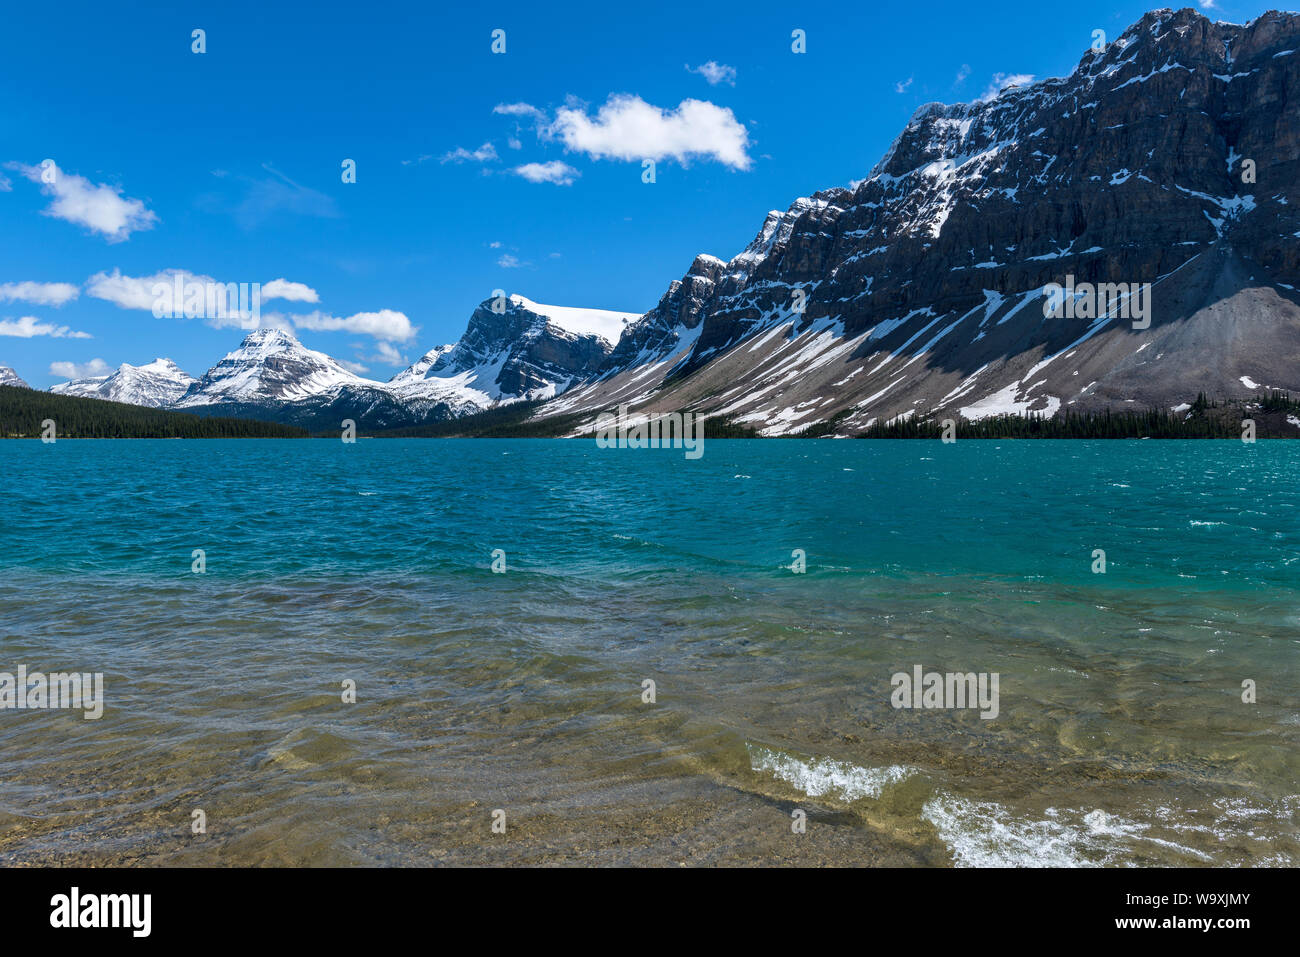 Le Lac Bow - une journée de printemps ensoleillée vue sur crystal-clear et colorée du lac Bow, entouré de hauts sommets enneigés, au parc national Banff, AB, Canada. Banque D'Images